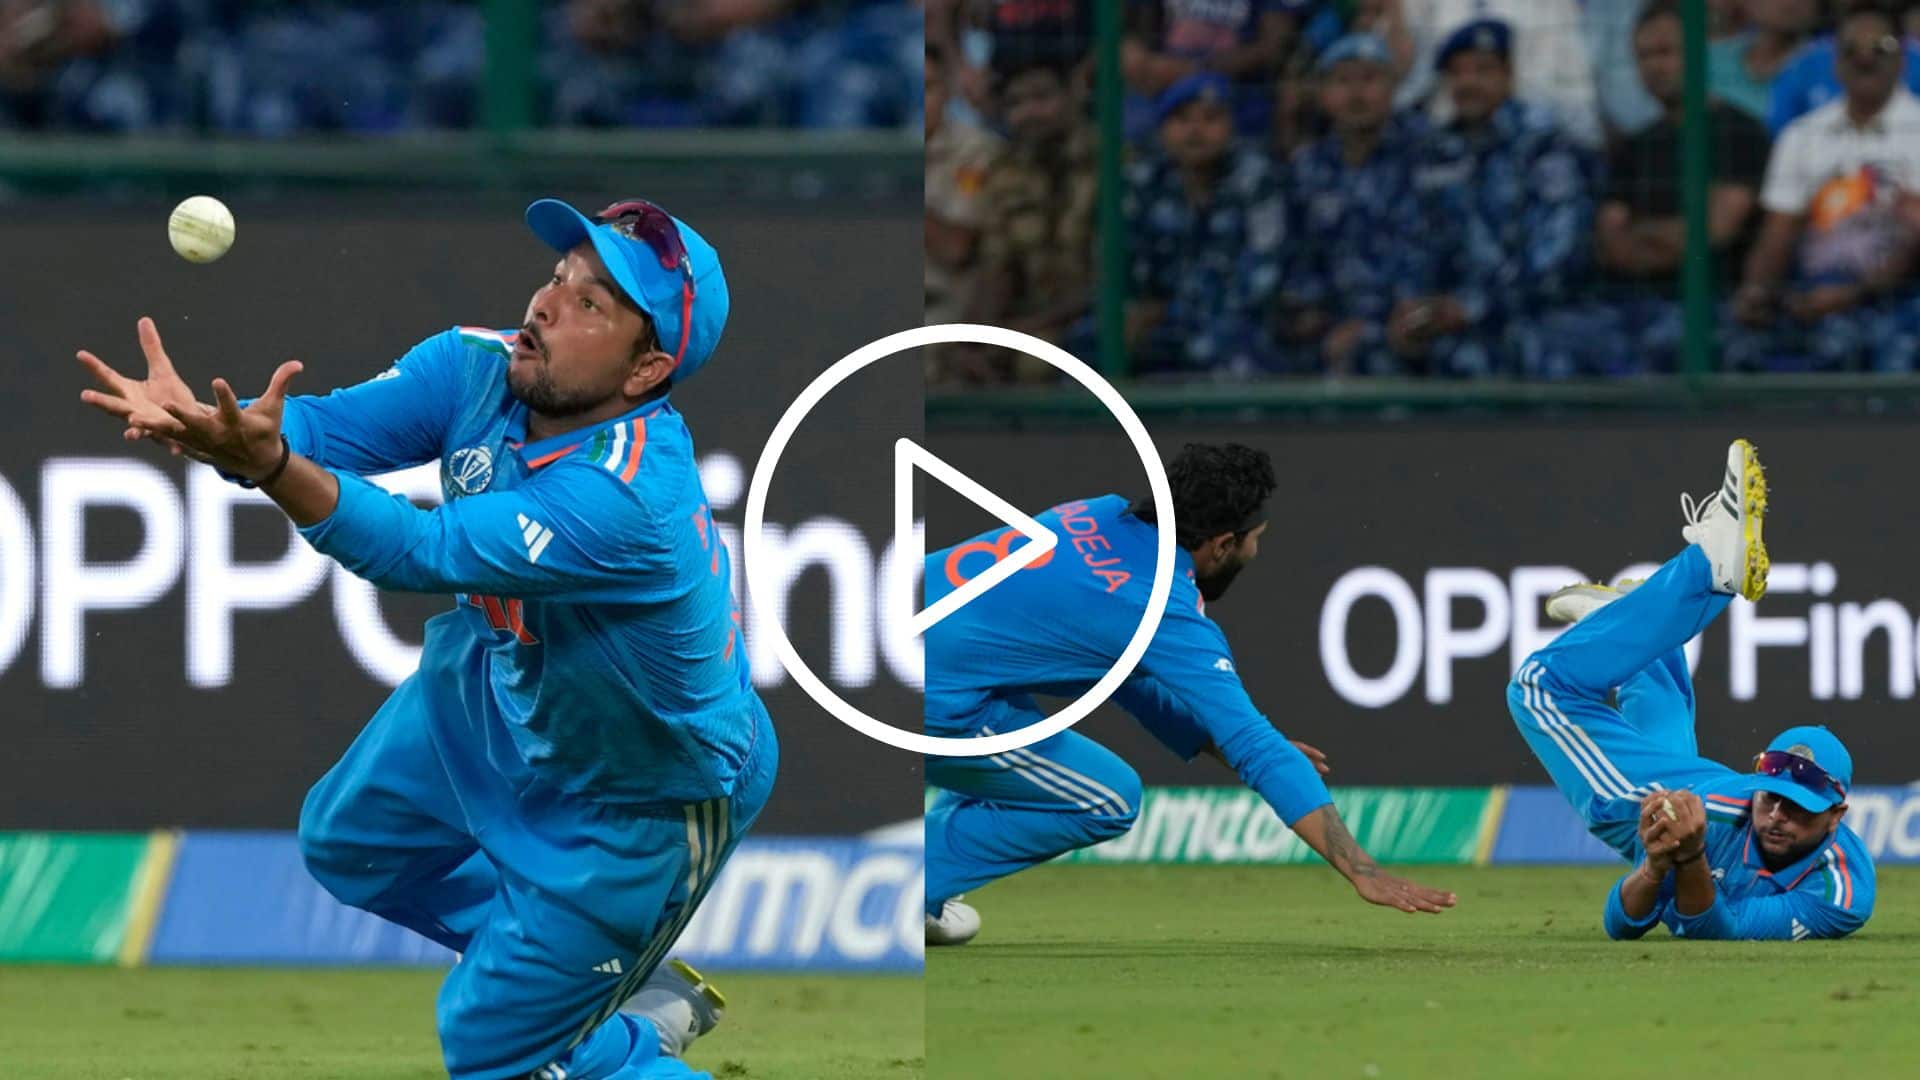 [Watch] Kuldeep Yadav Outrageous Juggling Catch Stuns Jadeja As Rashid Khan Falls